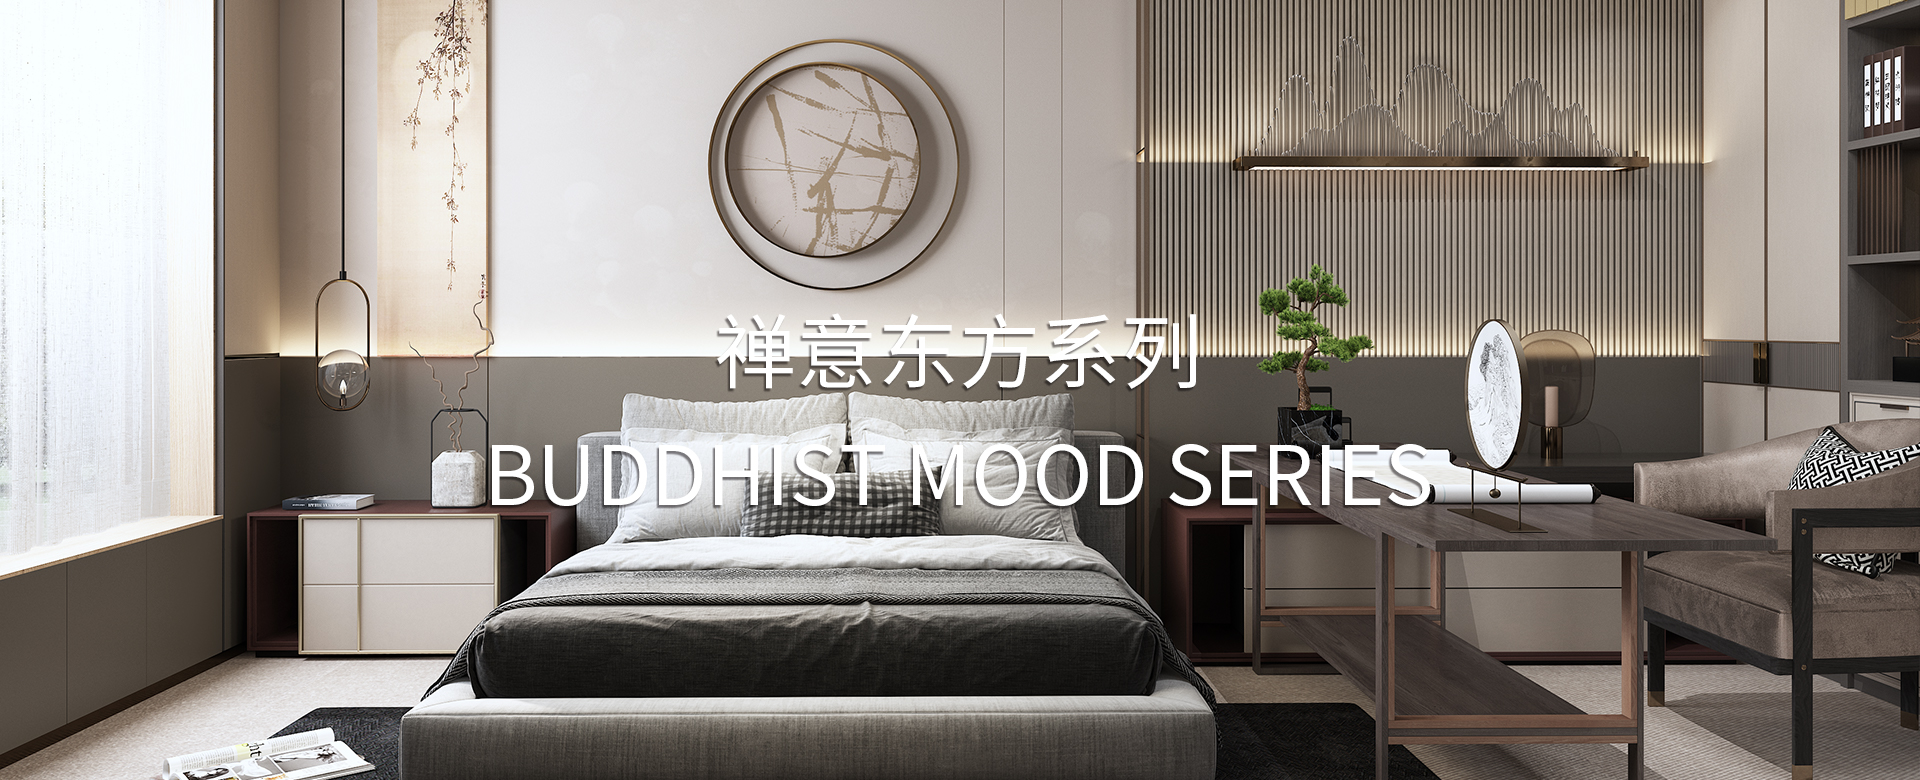 Buddhist mood series